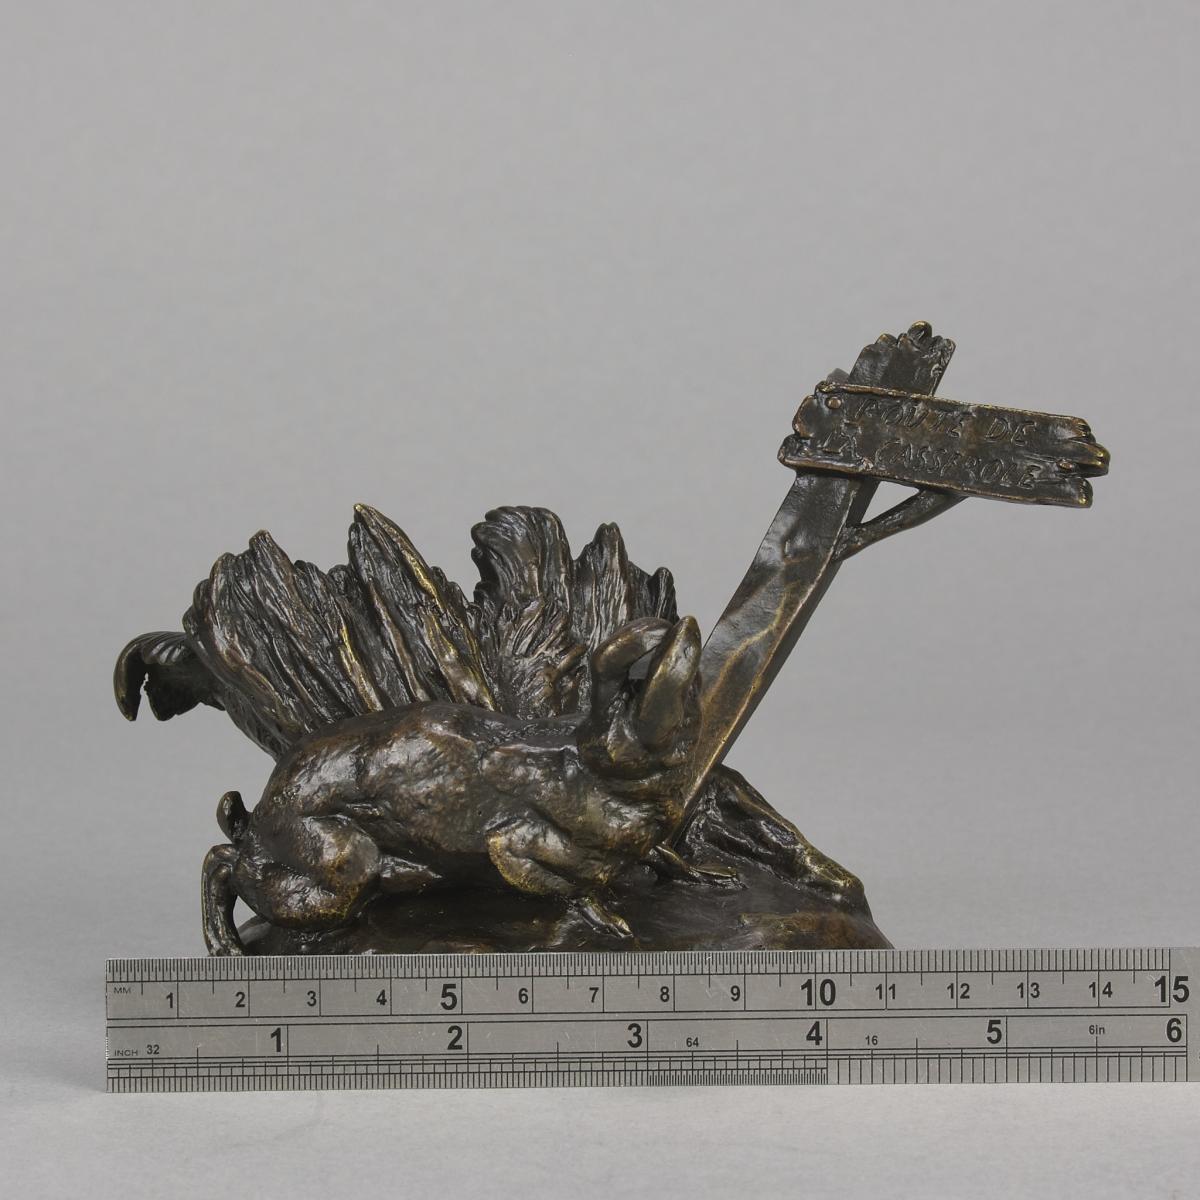 19th Century Animalier Bronze Sculpture "Route du Casserole" by Auguste Cain